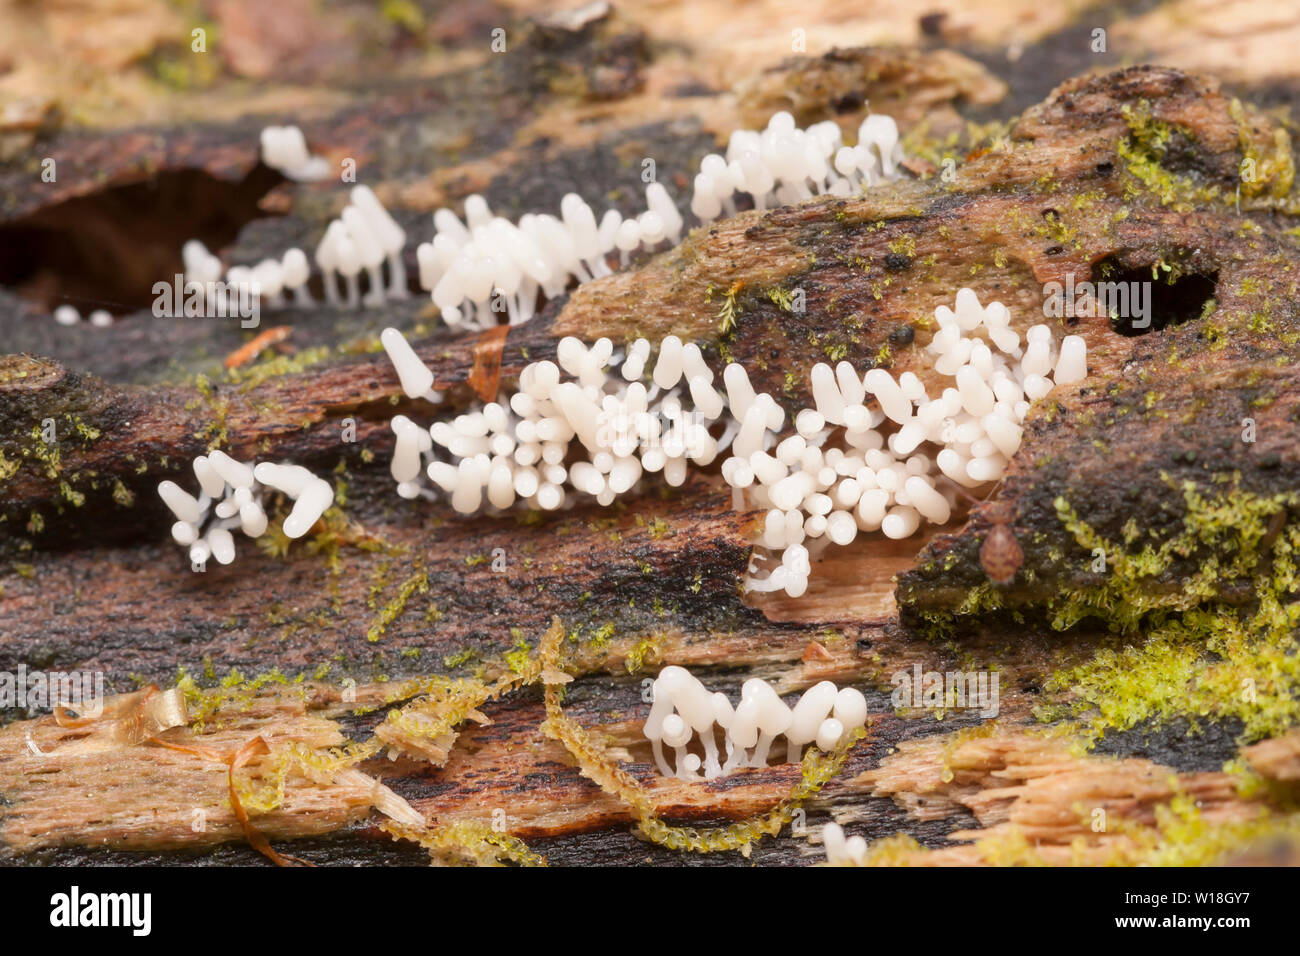 Los jóvenes limo del molde (Arcyria sp.) órganos de fructificación (esporangios) crecen en un árbol podrido. Foto de stock